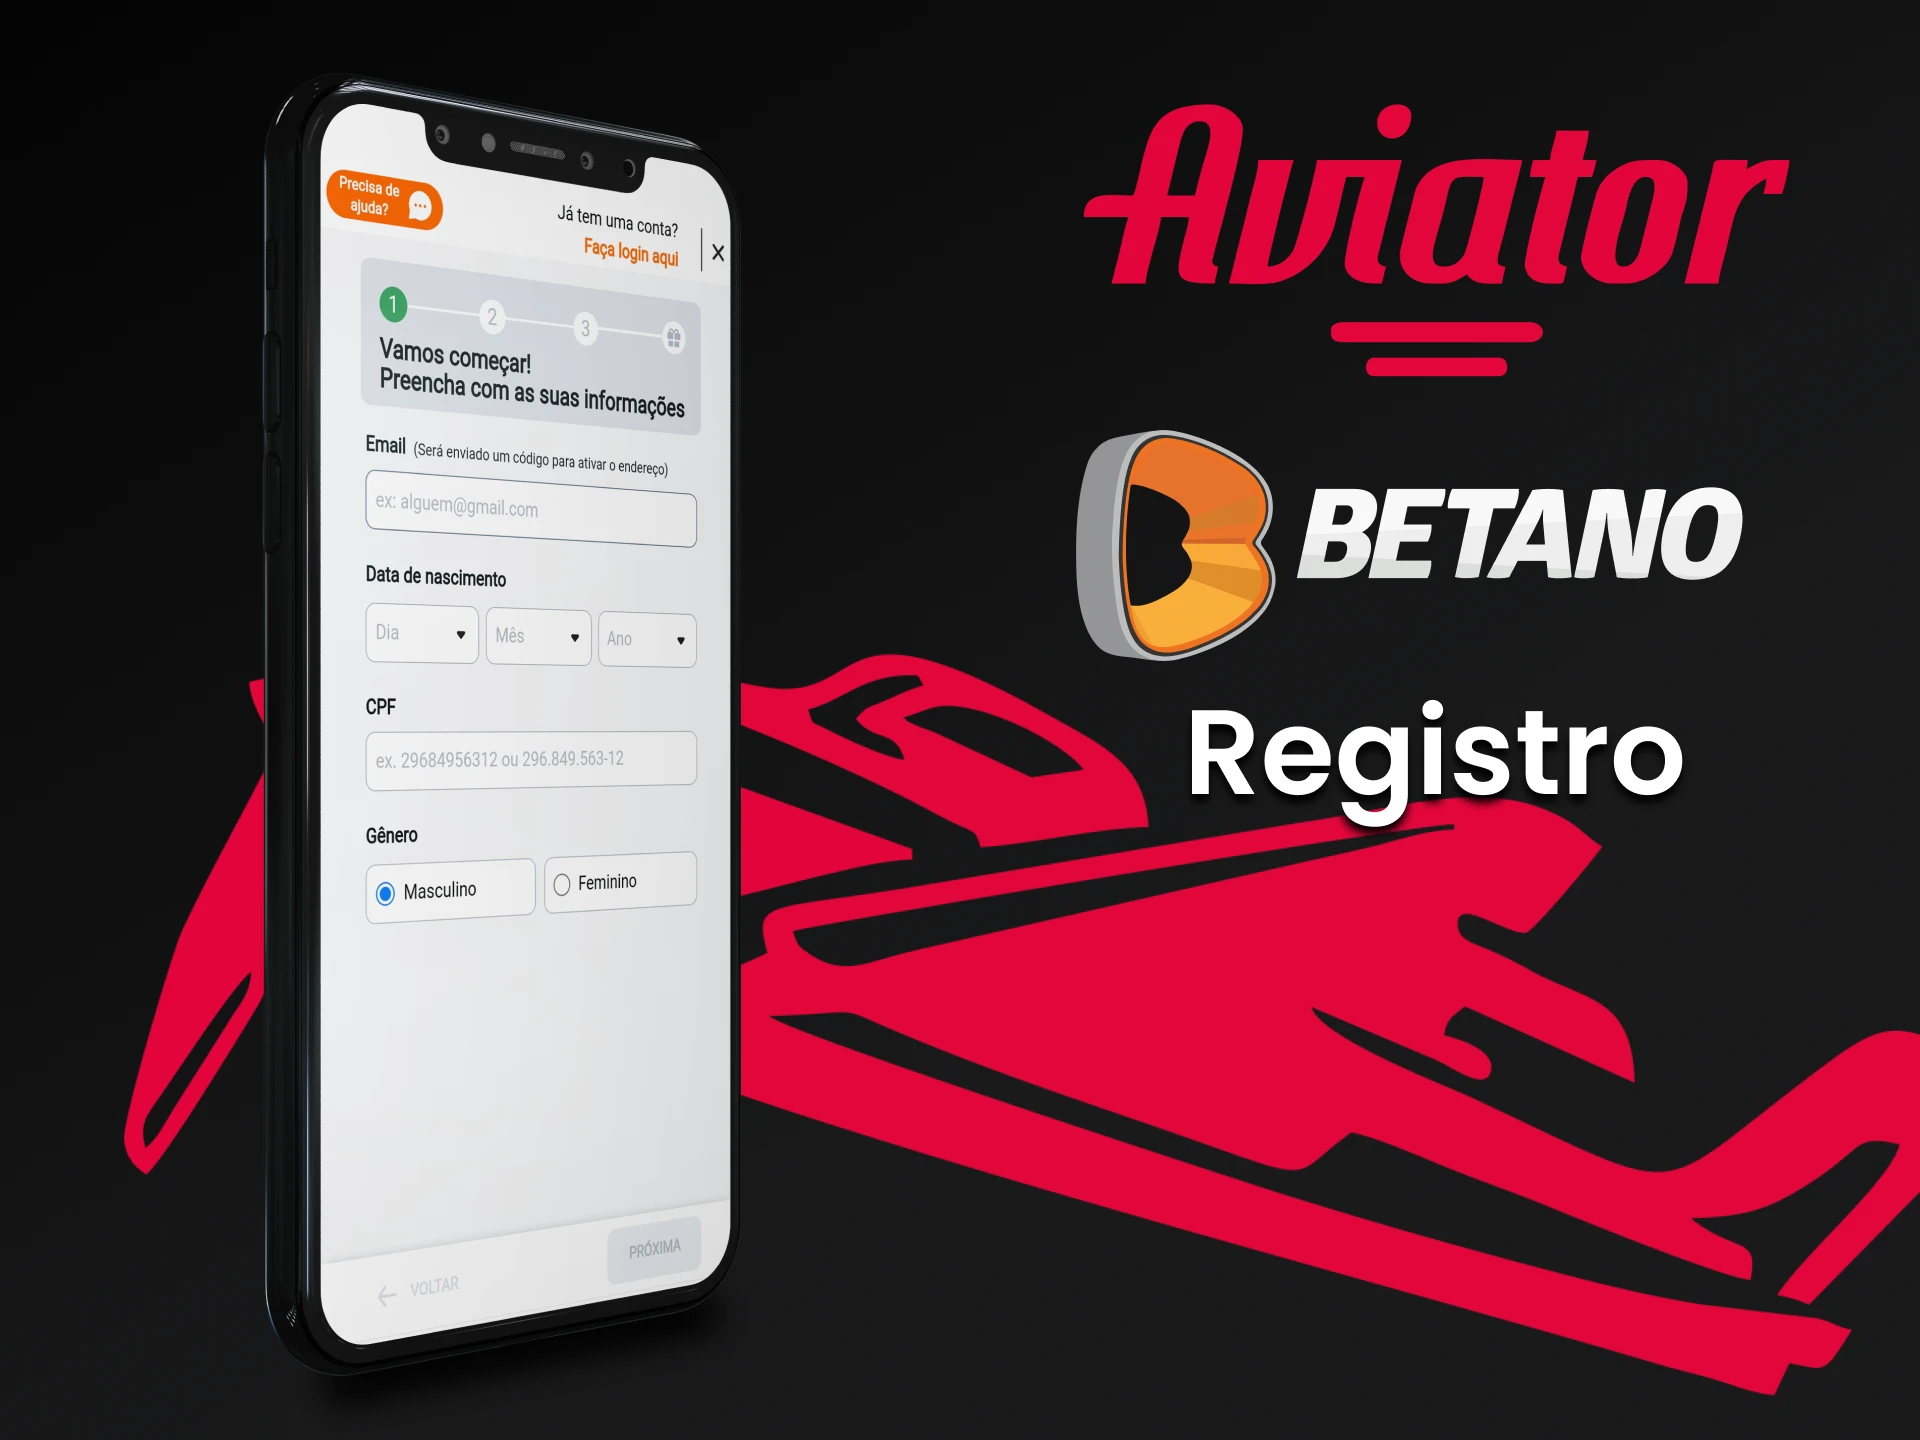 Passe pelo processo de registro para jogar Avaitor no app Betano.